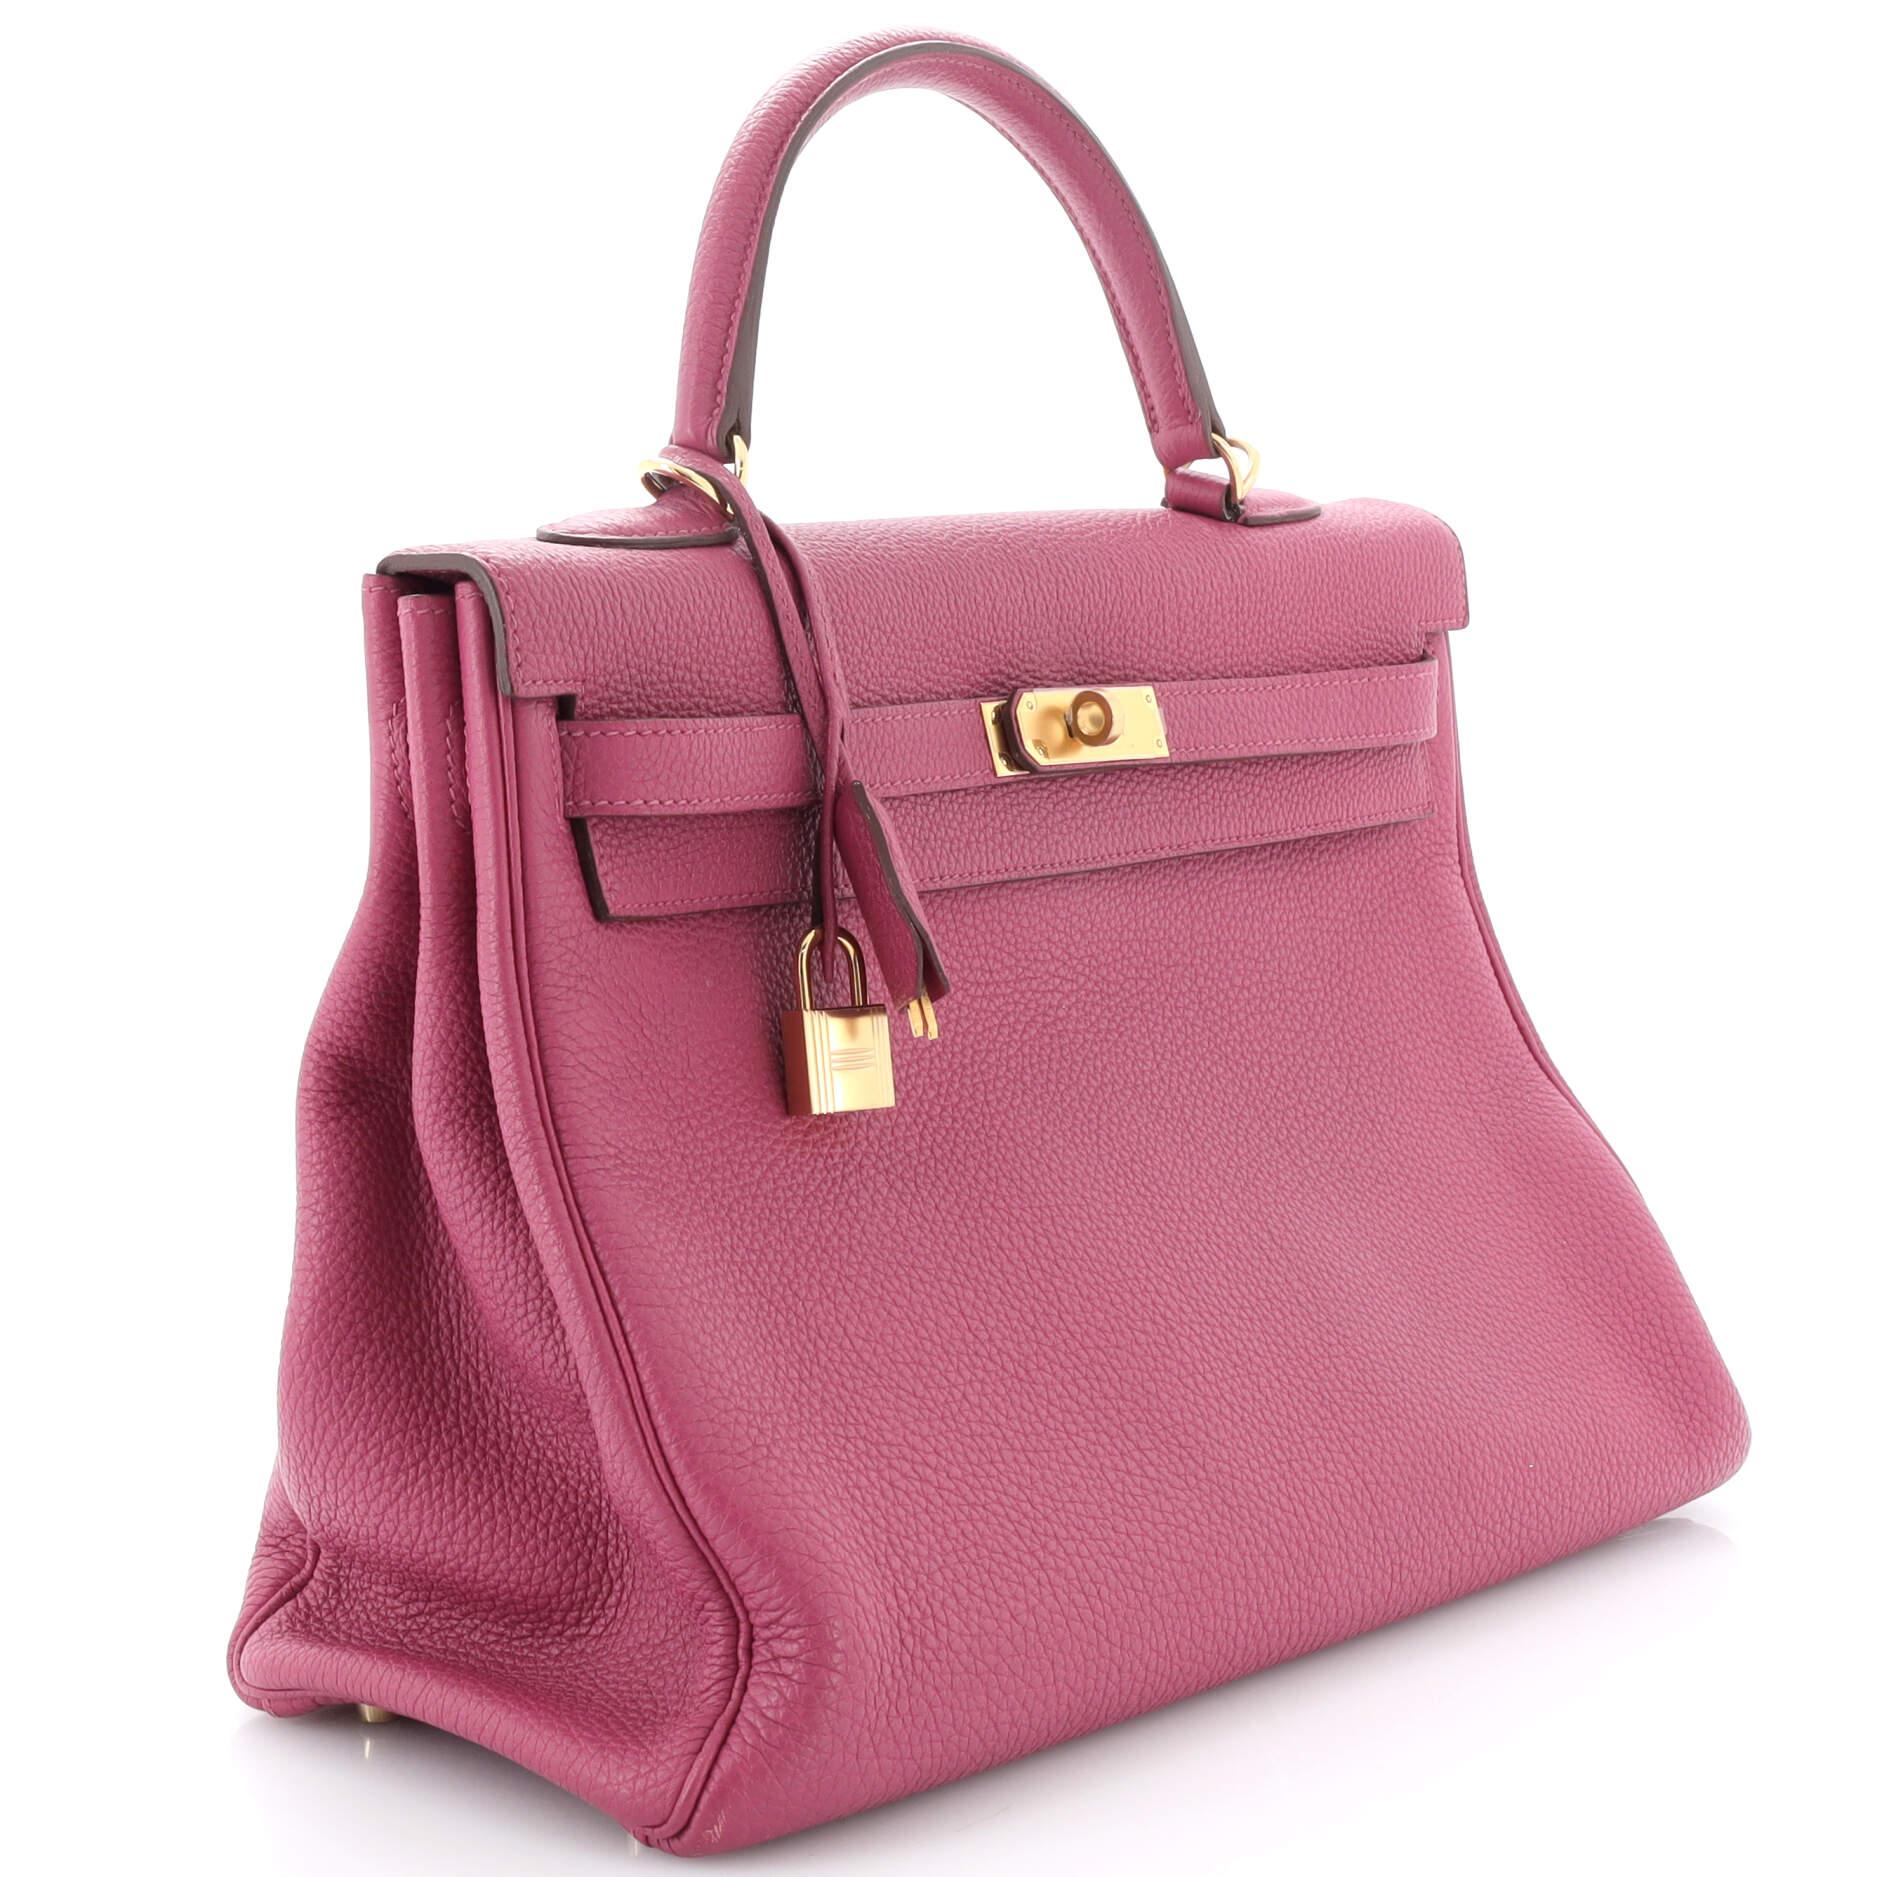 Hermes Kelly Handbag Tosca Togo With Gold Hardware 35 For Sale 7